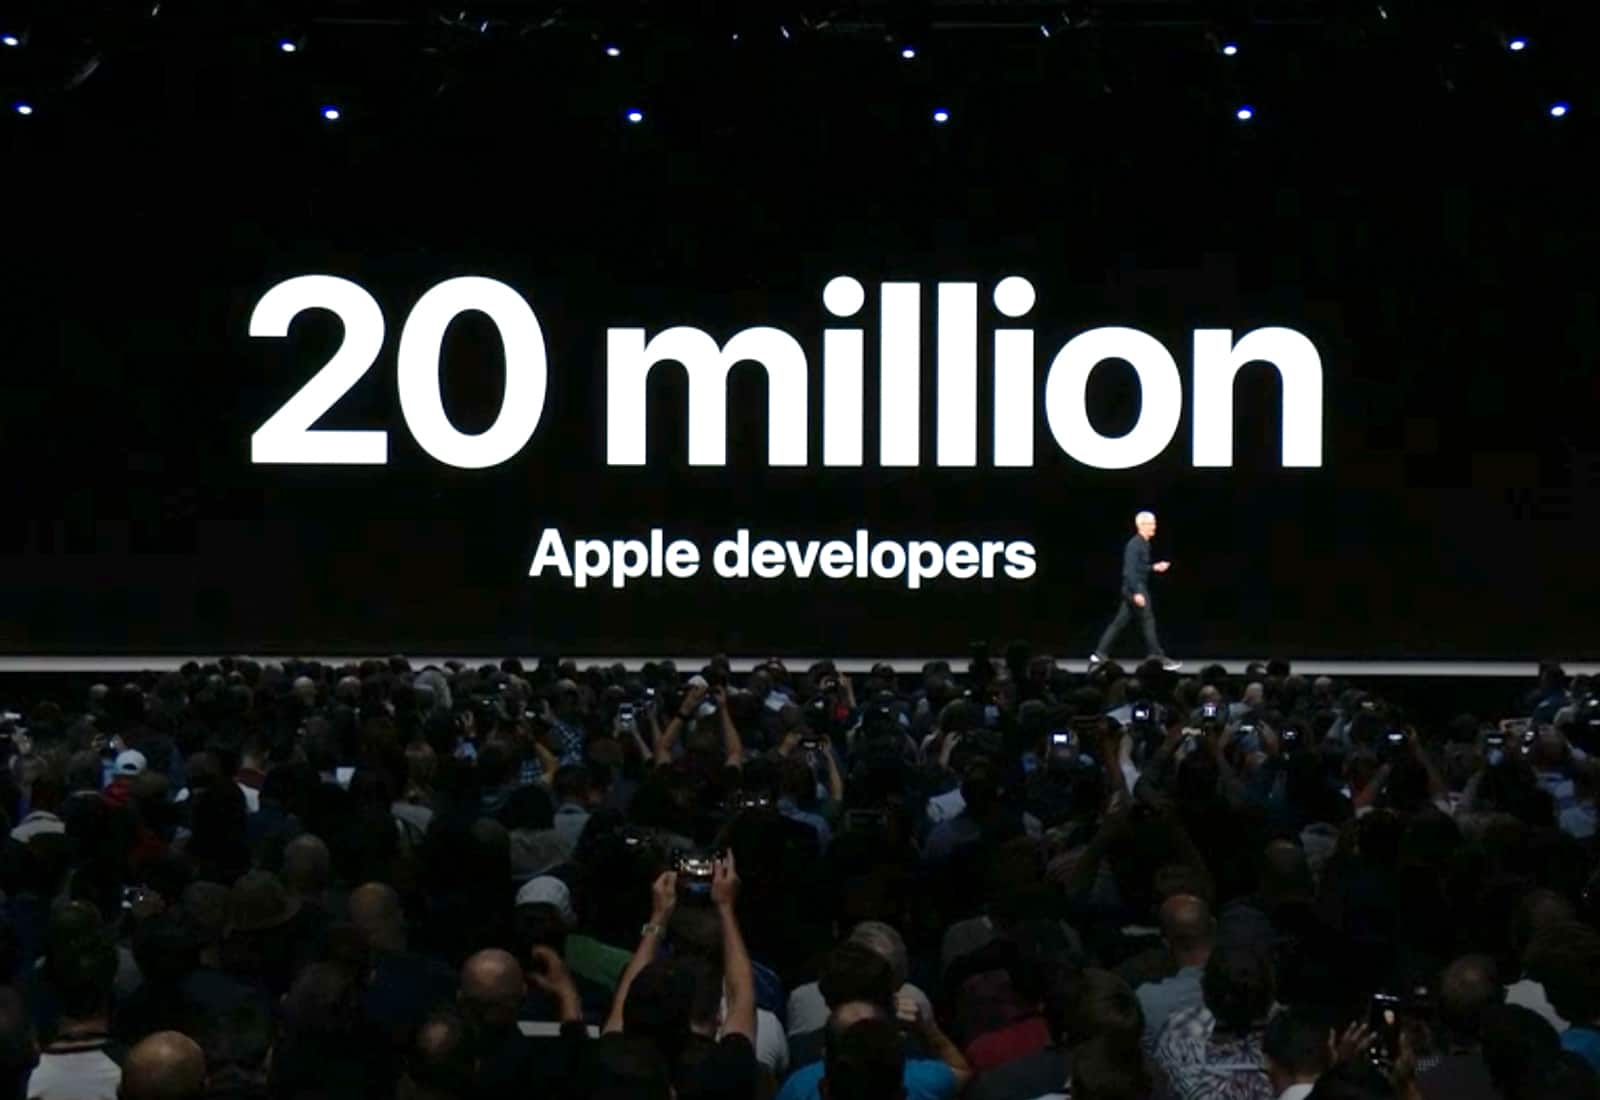 wwdc 20 million developers